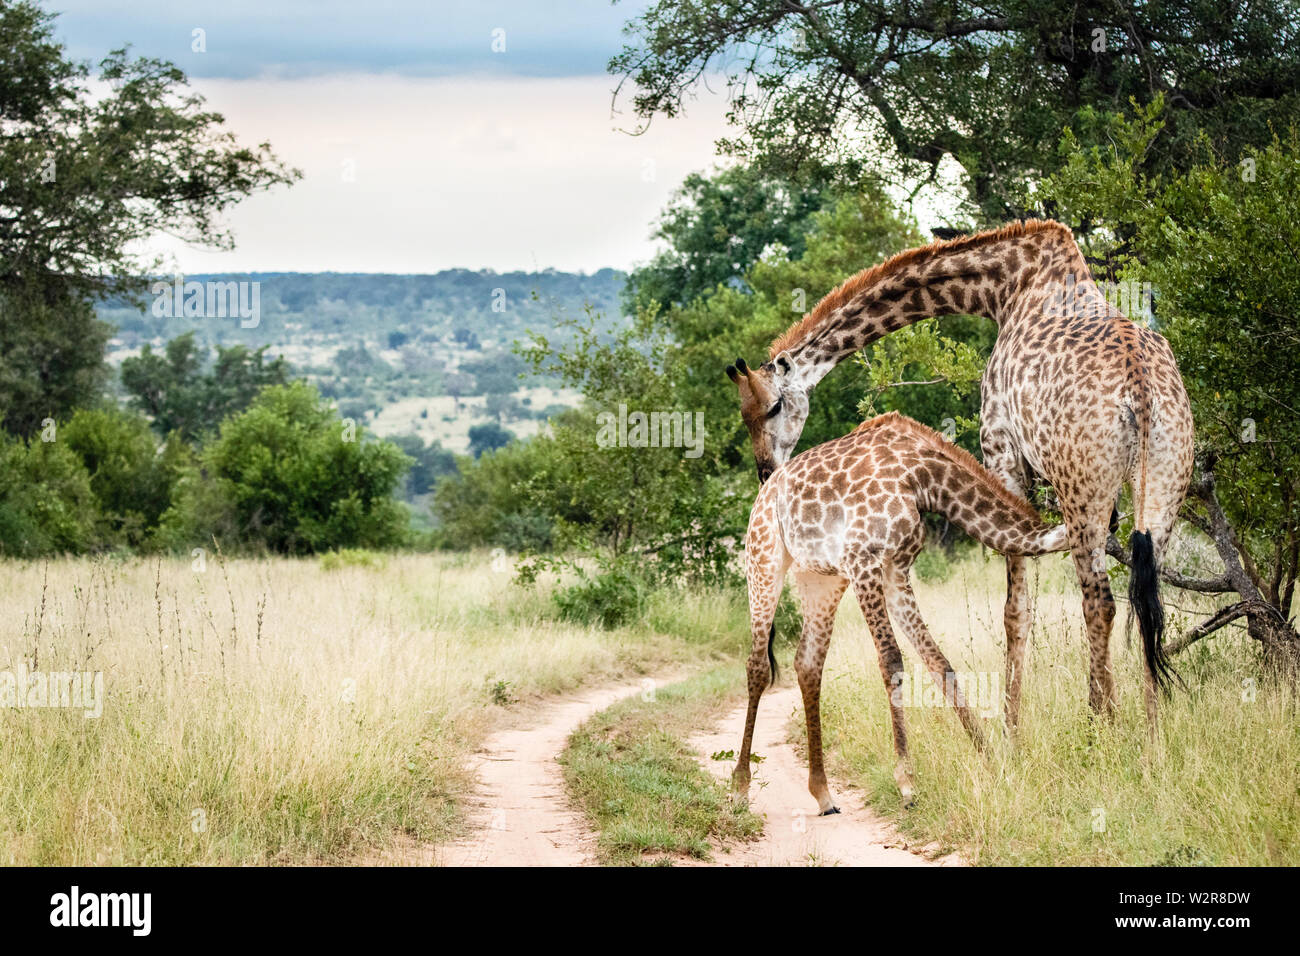 A mother southern African giraffe, Giraffa camelopardalis giraffa, nurses its calf, bending its neck as the calf suckles. Stock Photo